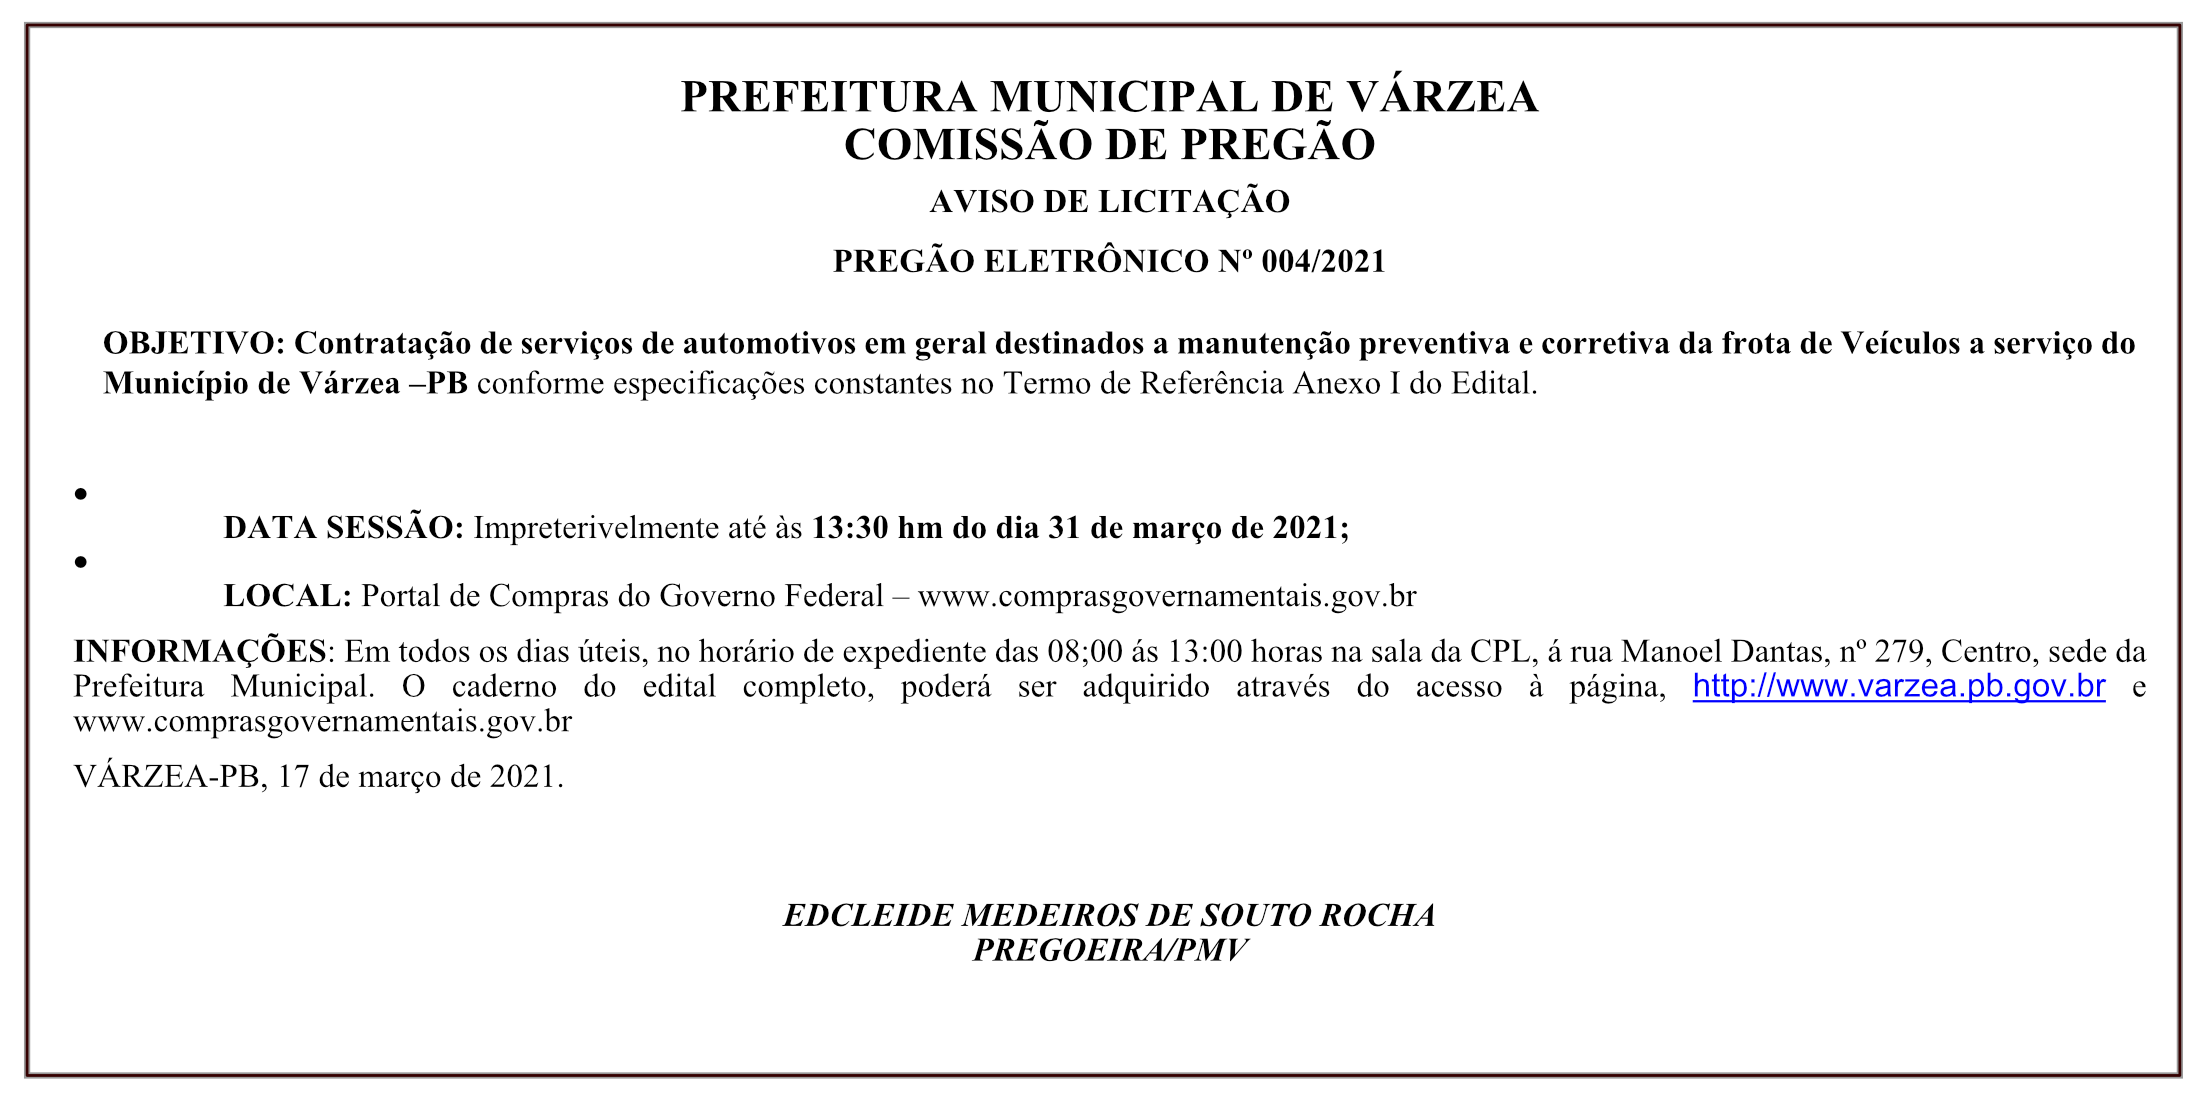 PREFEITURA MUNICIPAL DE VÁRZEA – COMISSÃO DE PREGÃO – AVISO DE LICITAÇÃO – PREGÃO ELETRÔNICO Nº 004/2021